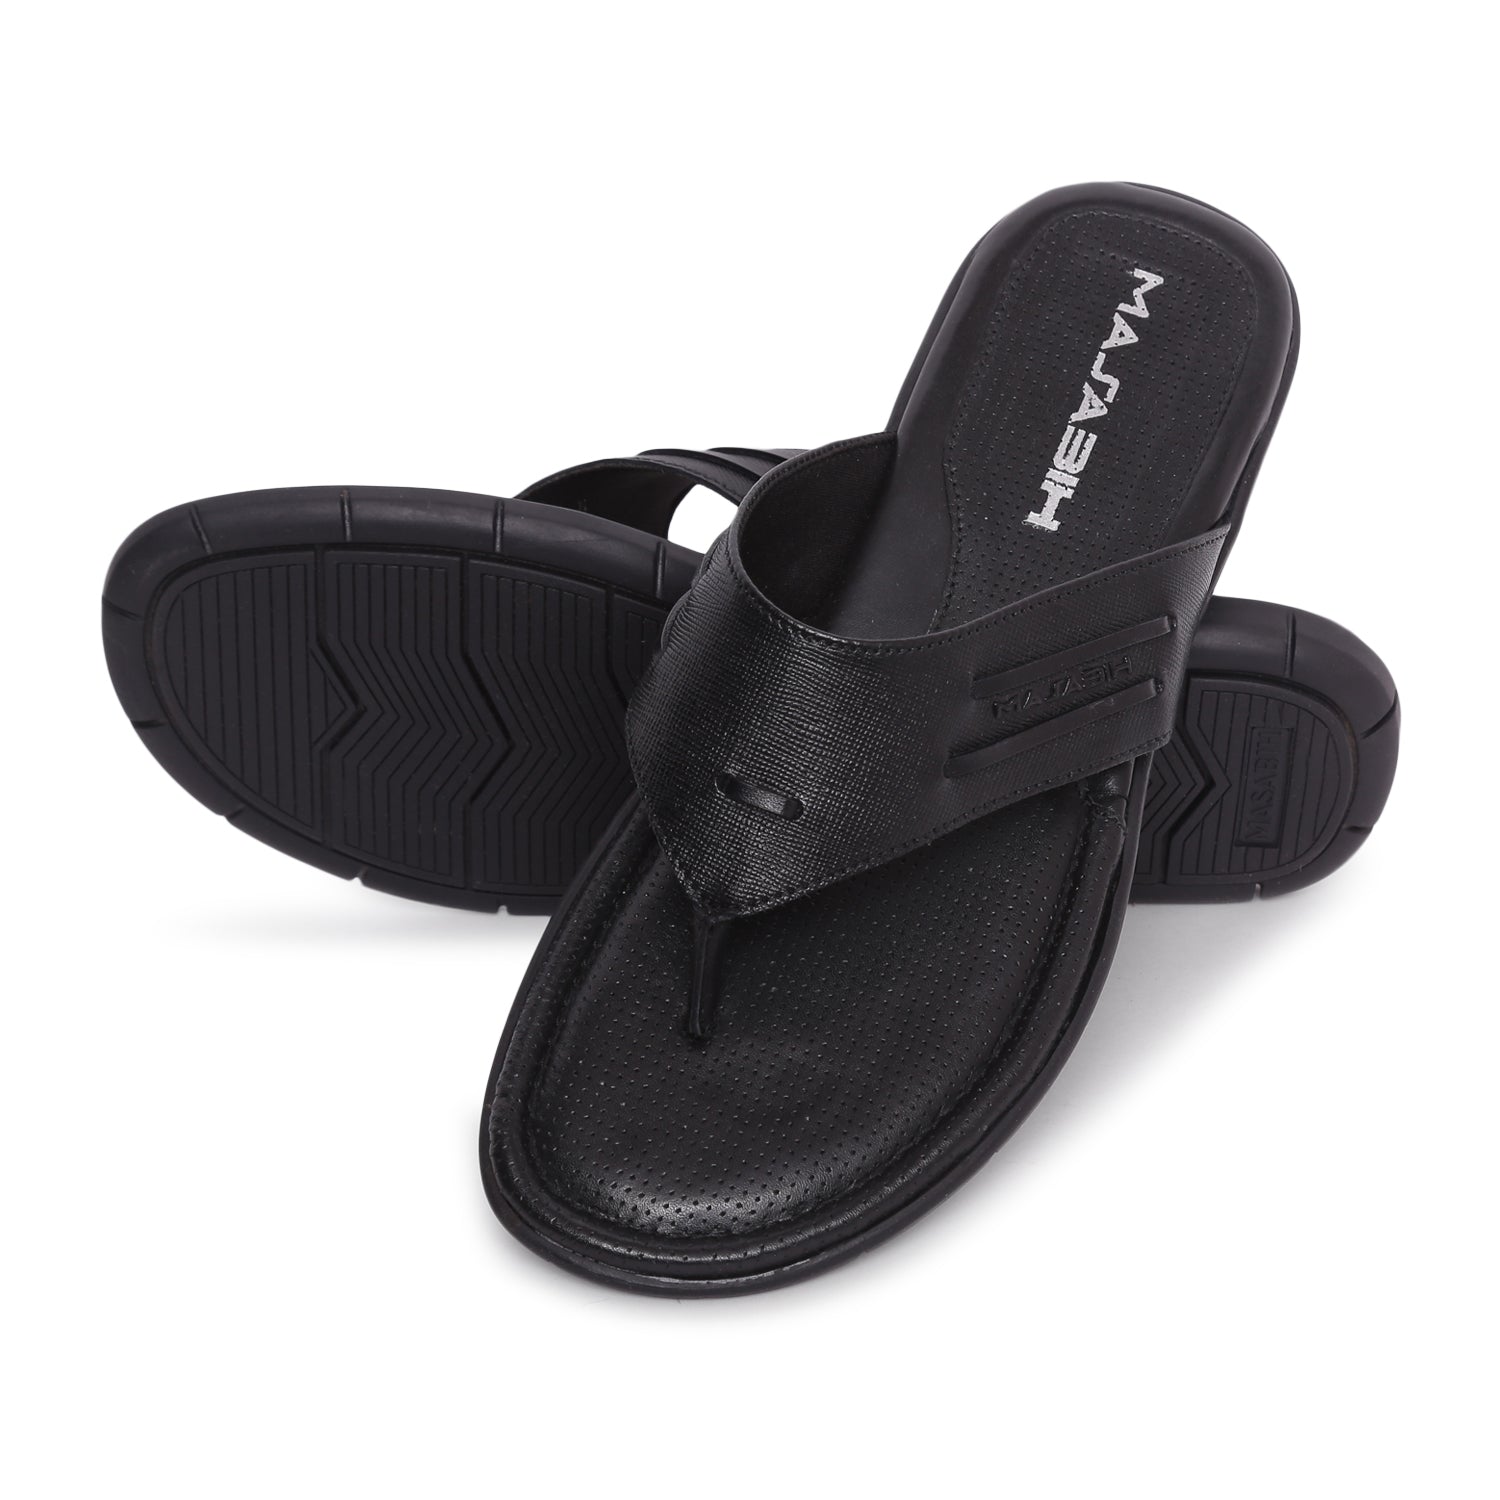 MASABIH Geniune Leather Soft I Print Black Color modern thong sandals for Mens